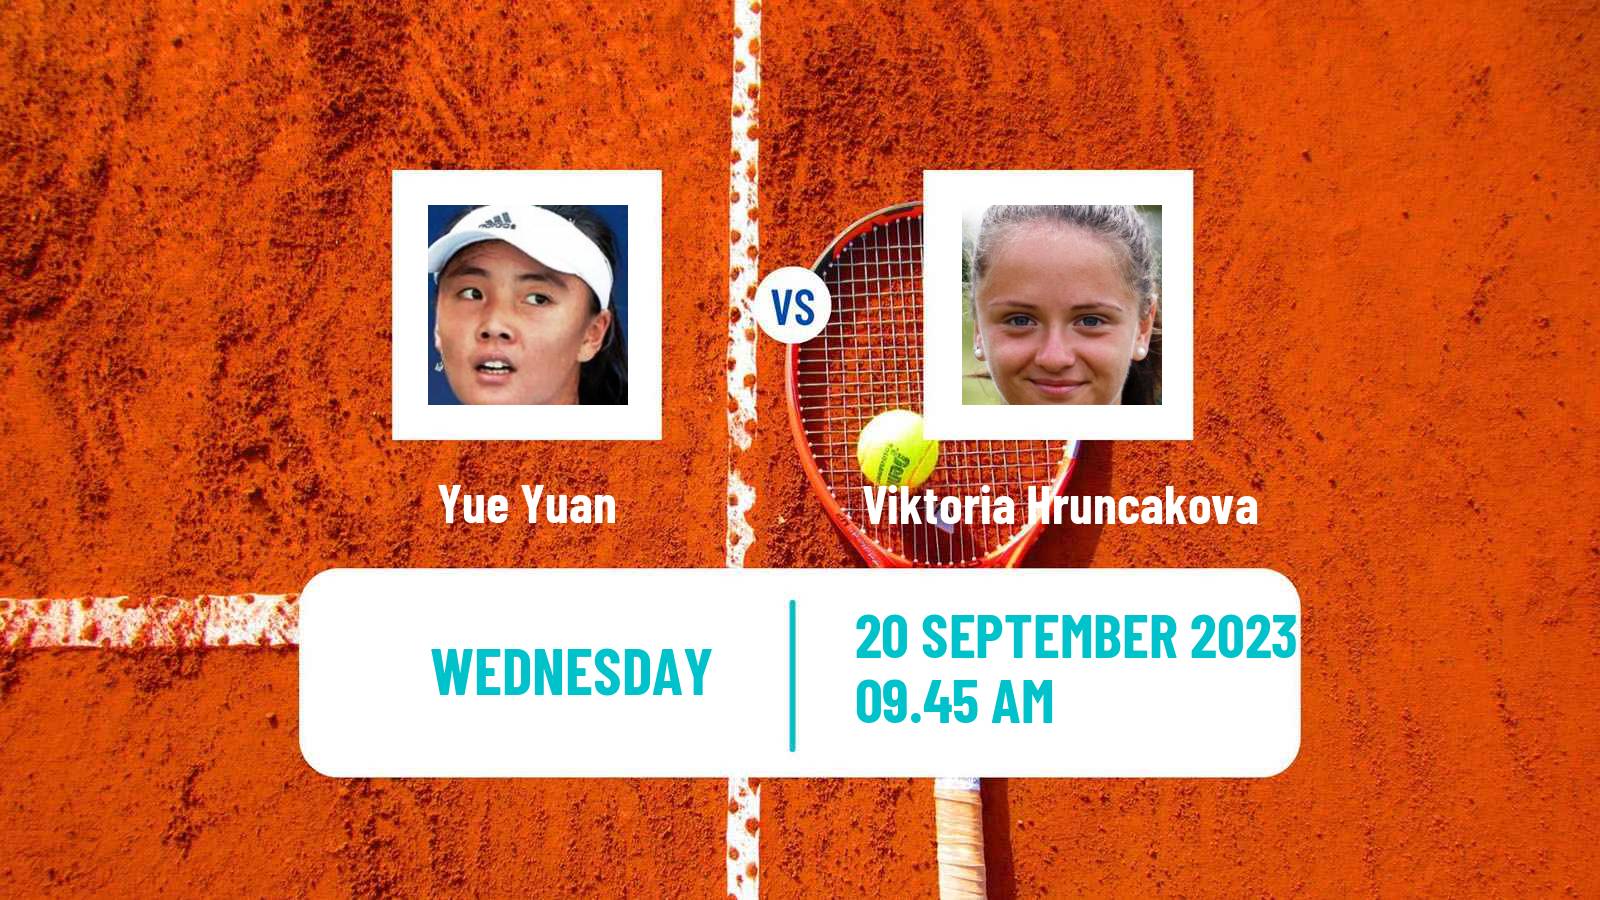 Tennis WTA Guangzhou Yue Yuan - Viktoria Hruncakova